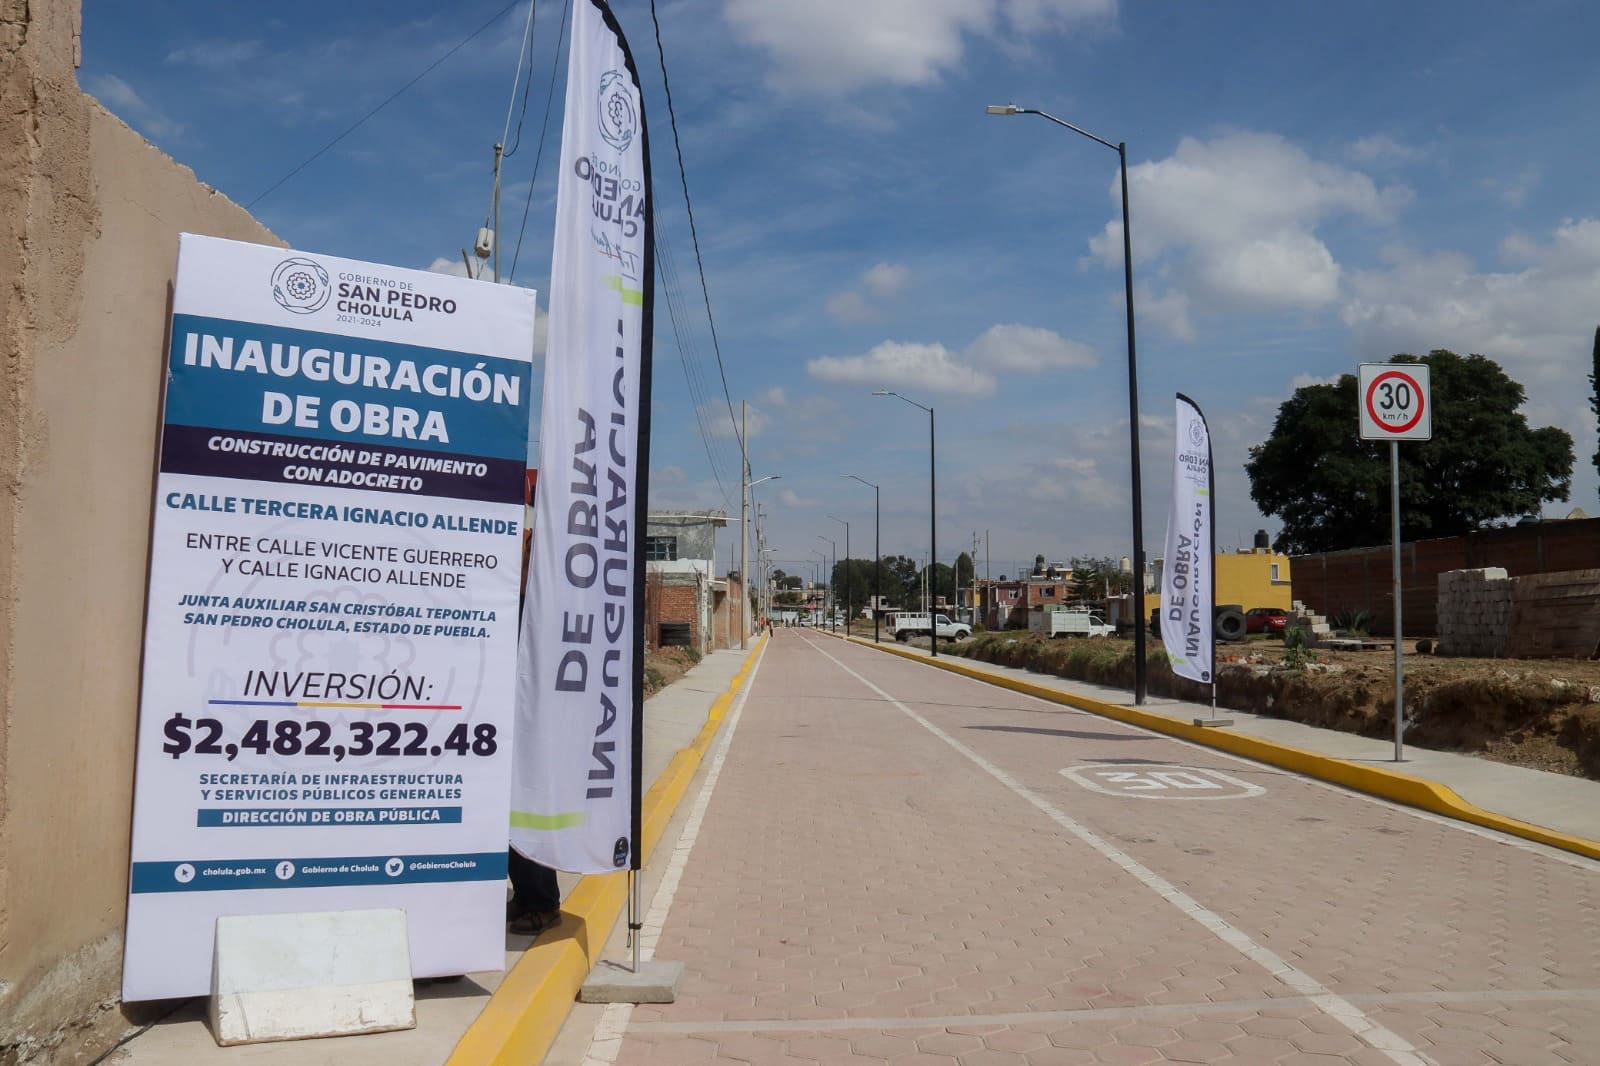 Paola Angon pavimenta calle en Tepontla: Más movilidad y seguridad